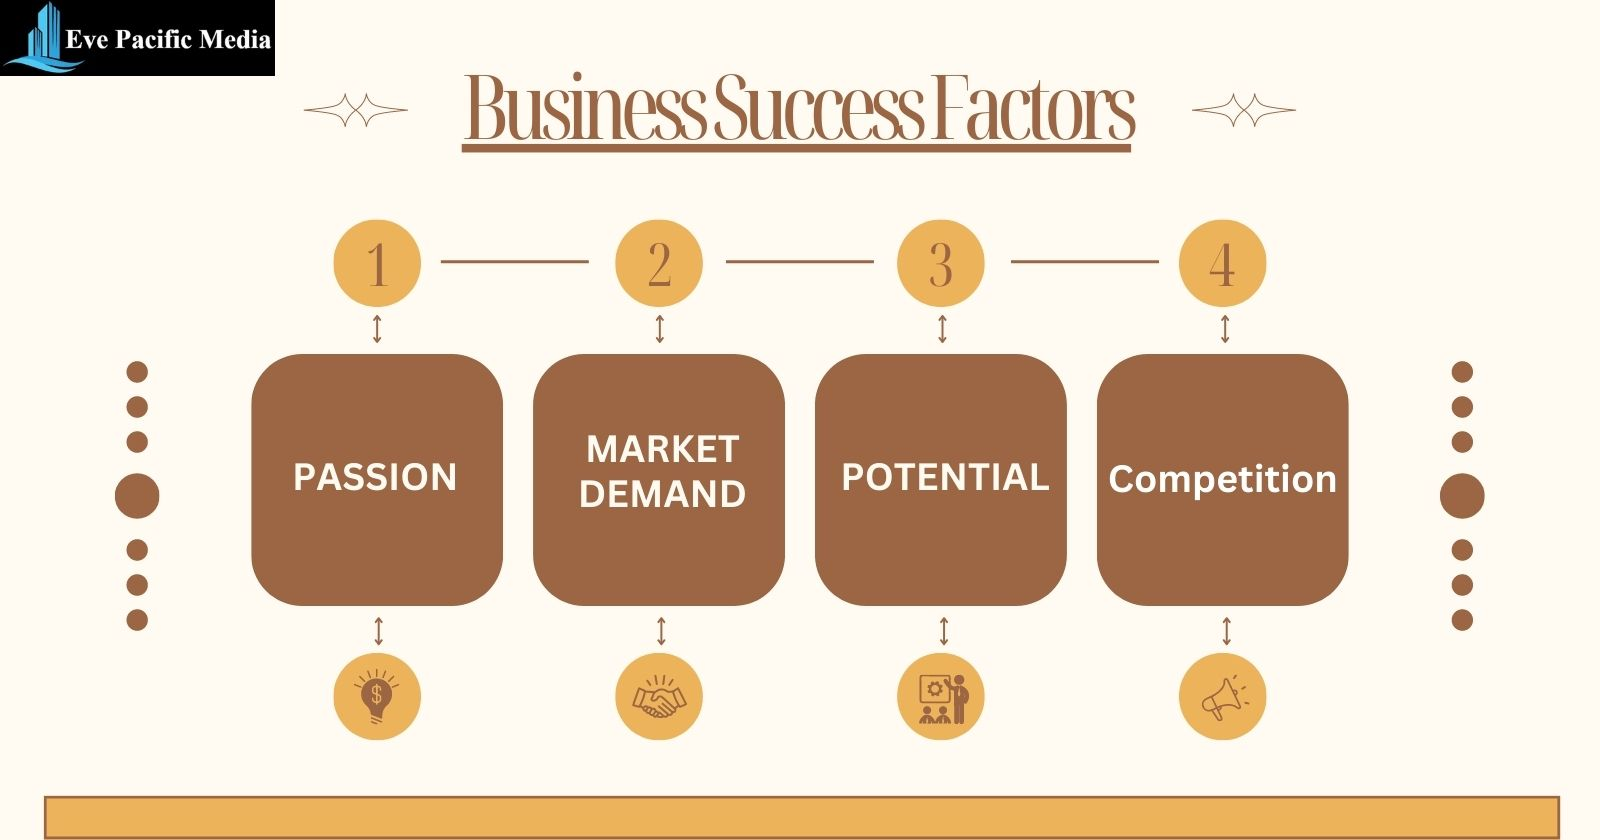 Business Success Factors